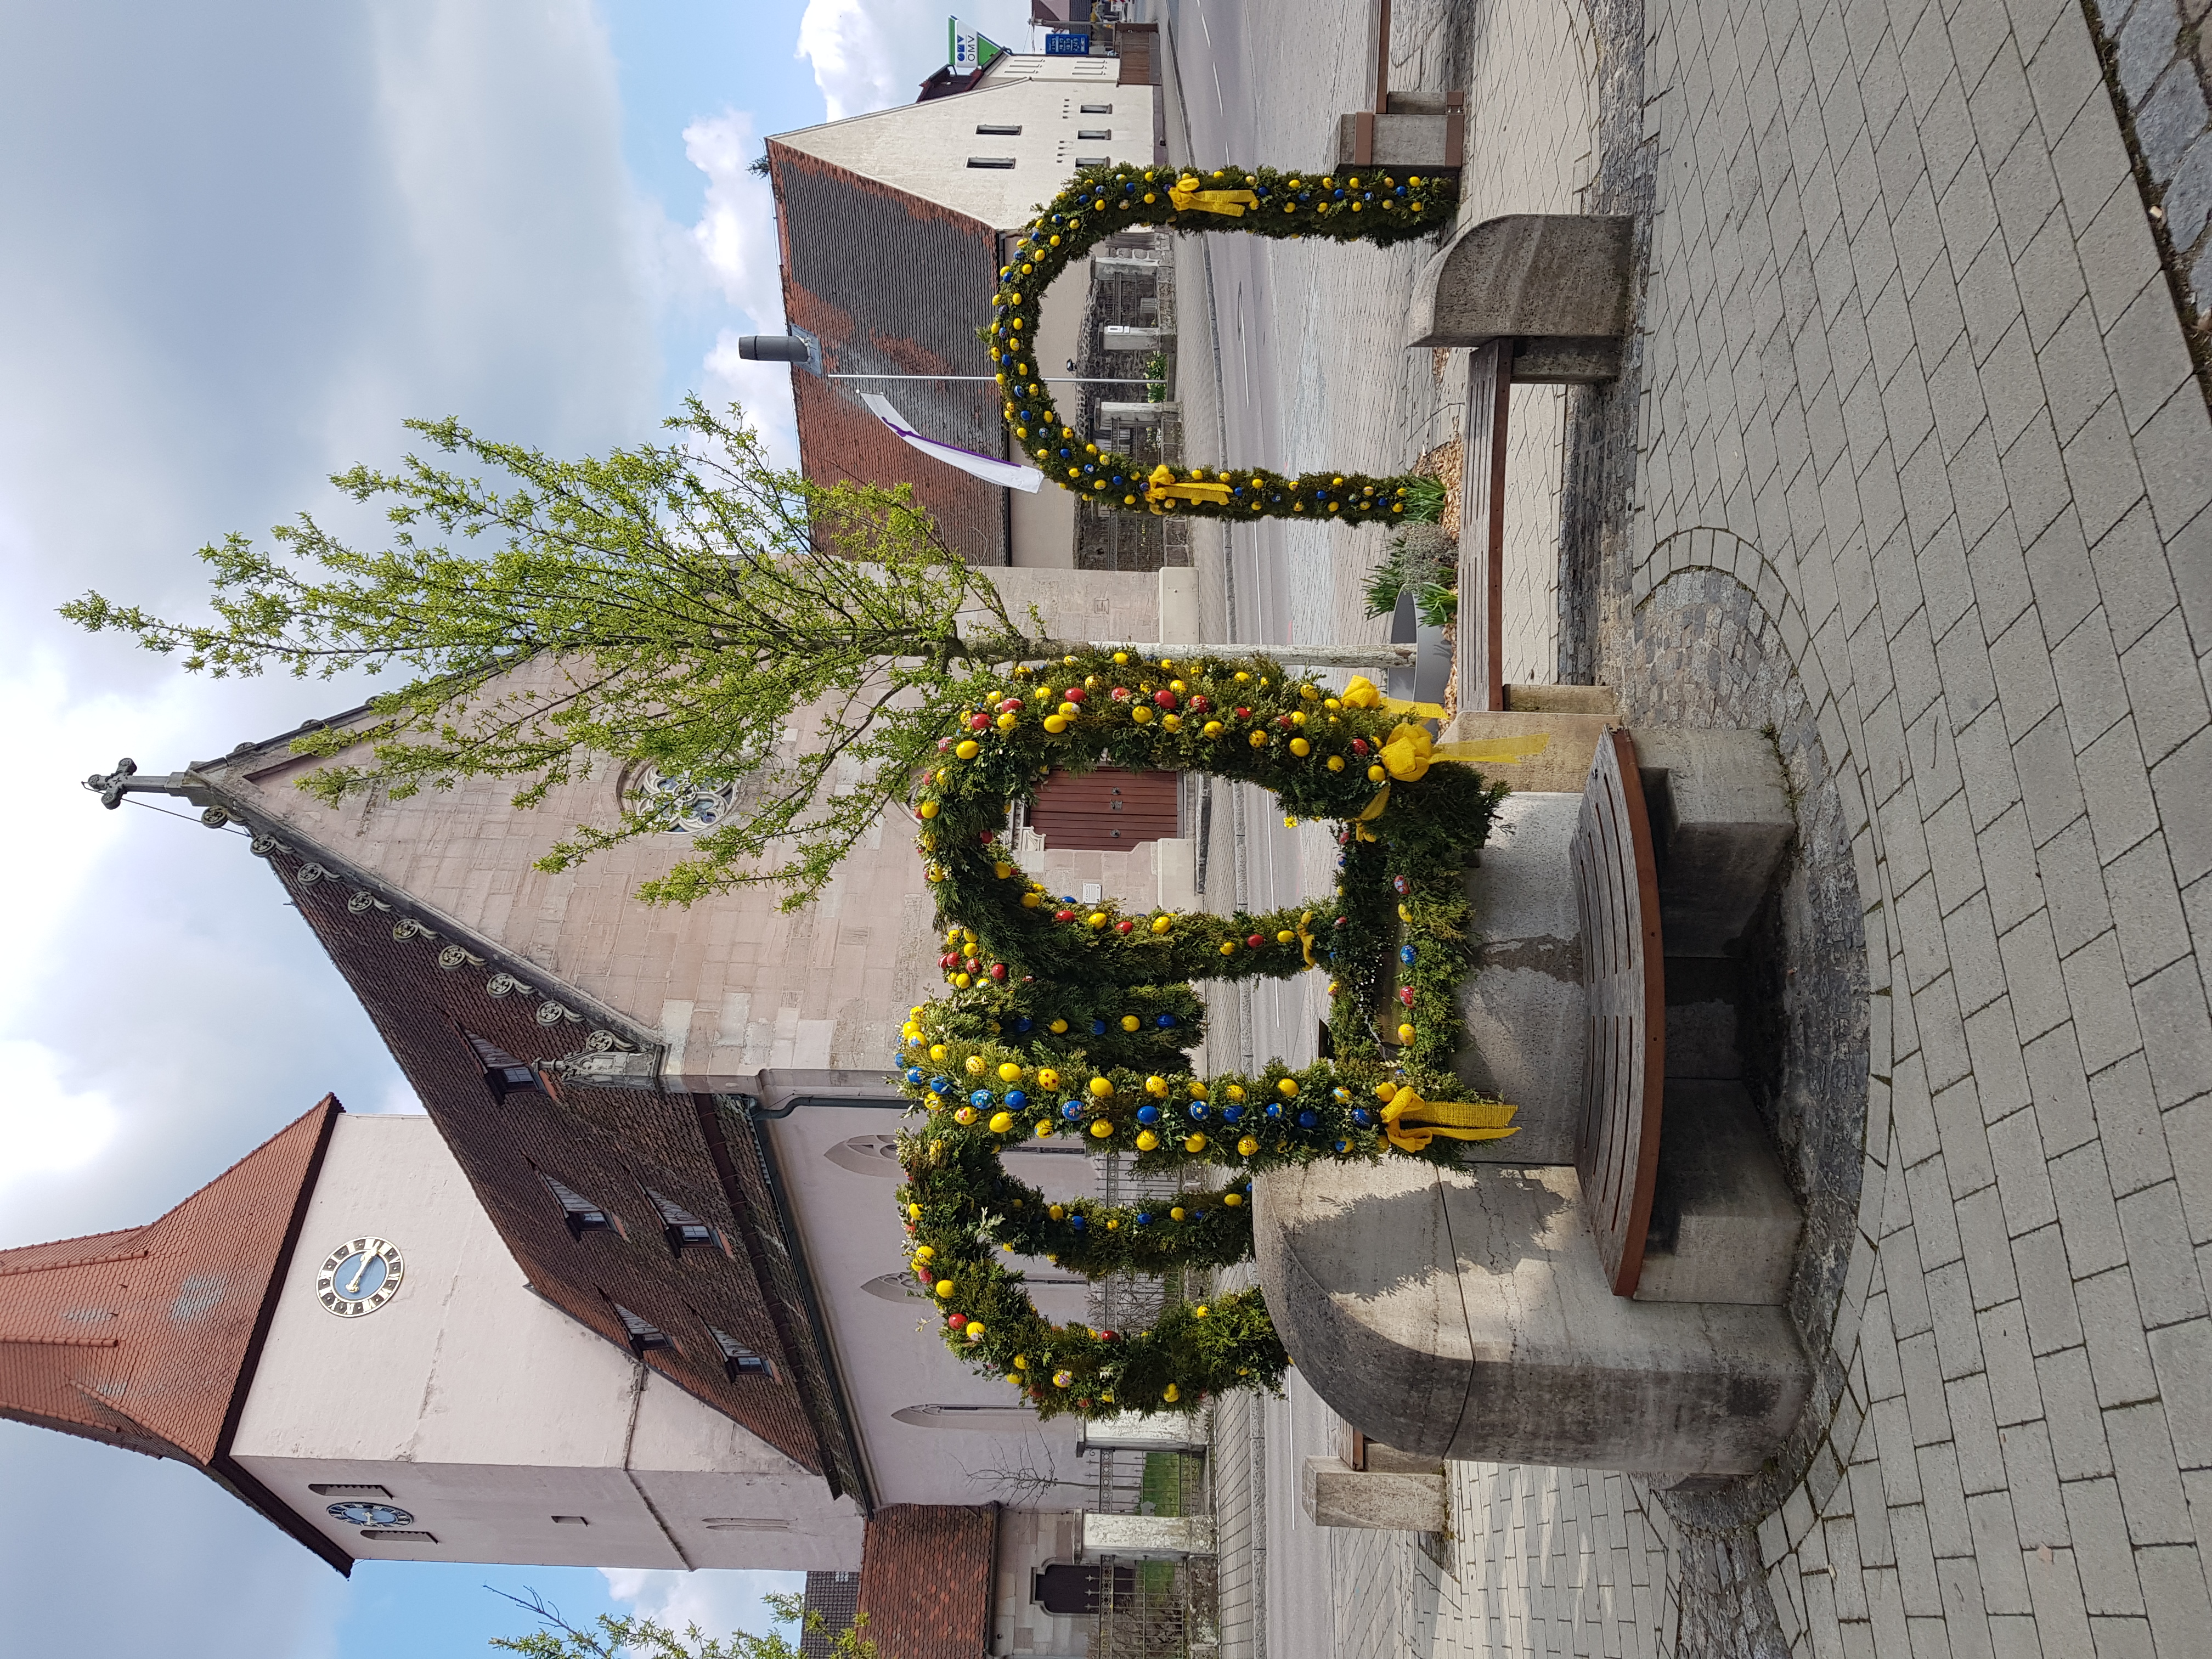  Osterbrunnen in Leerstetten vor dem Hintergrund einer Kirche. 